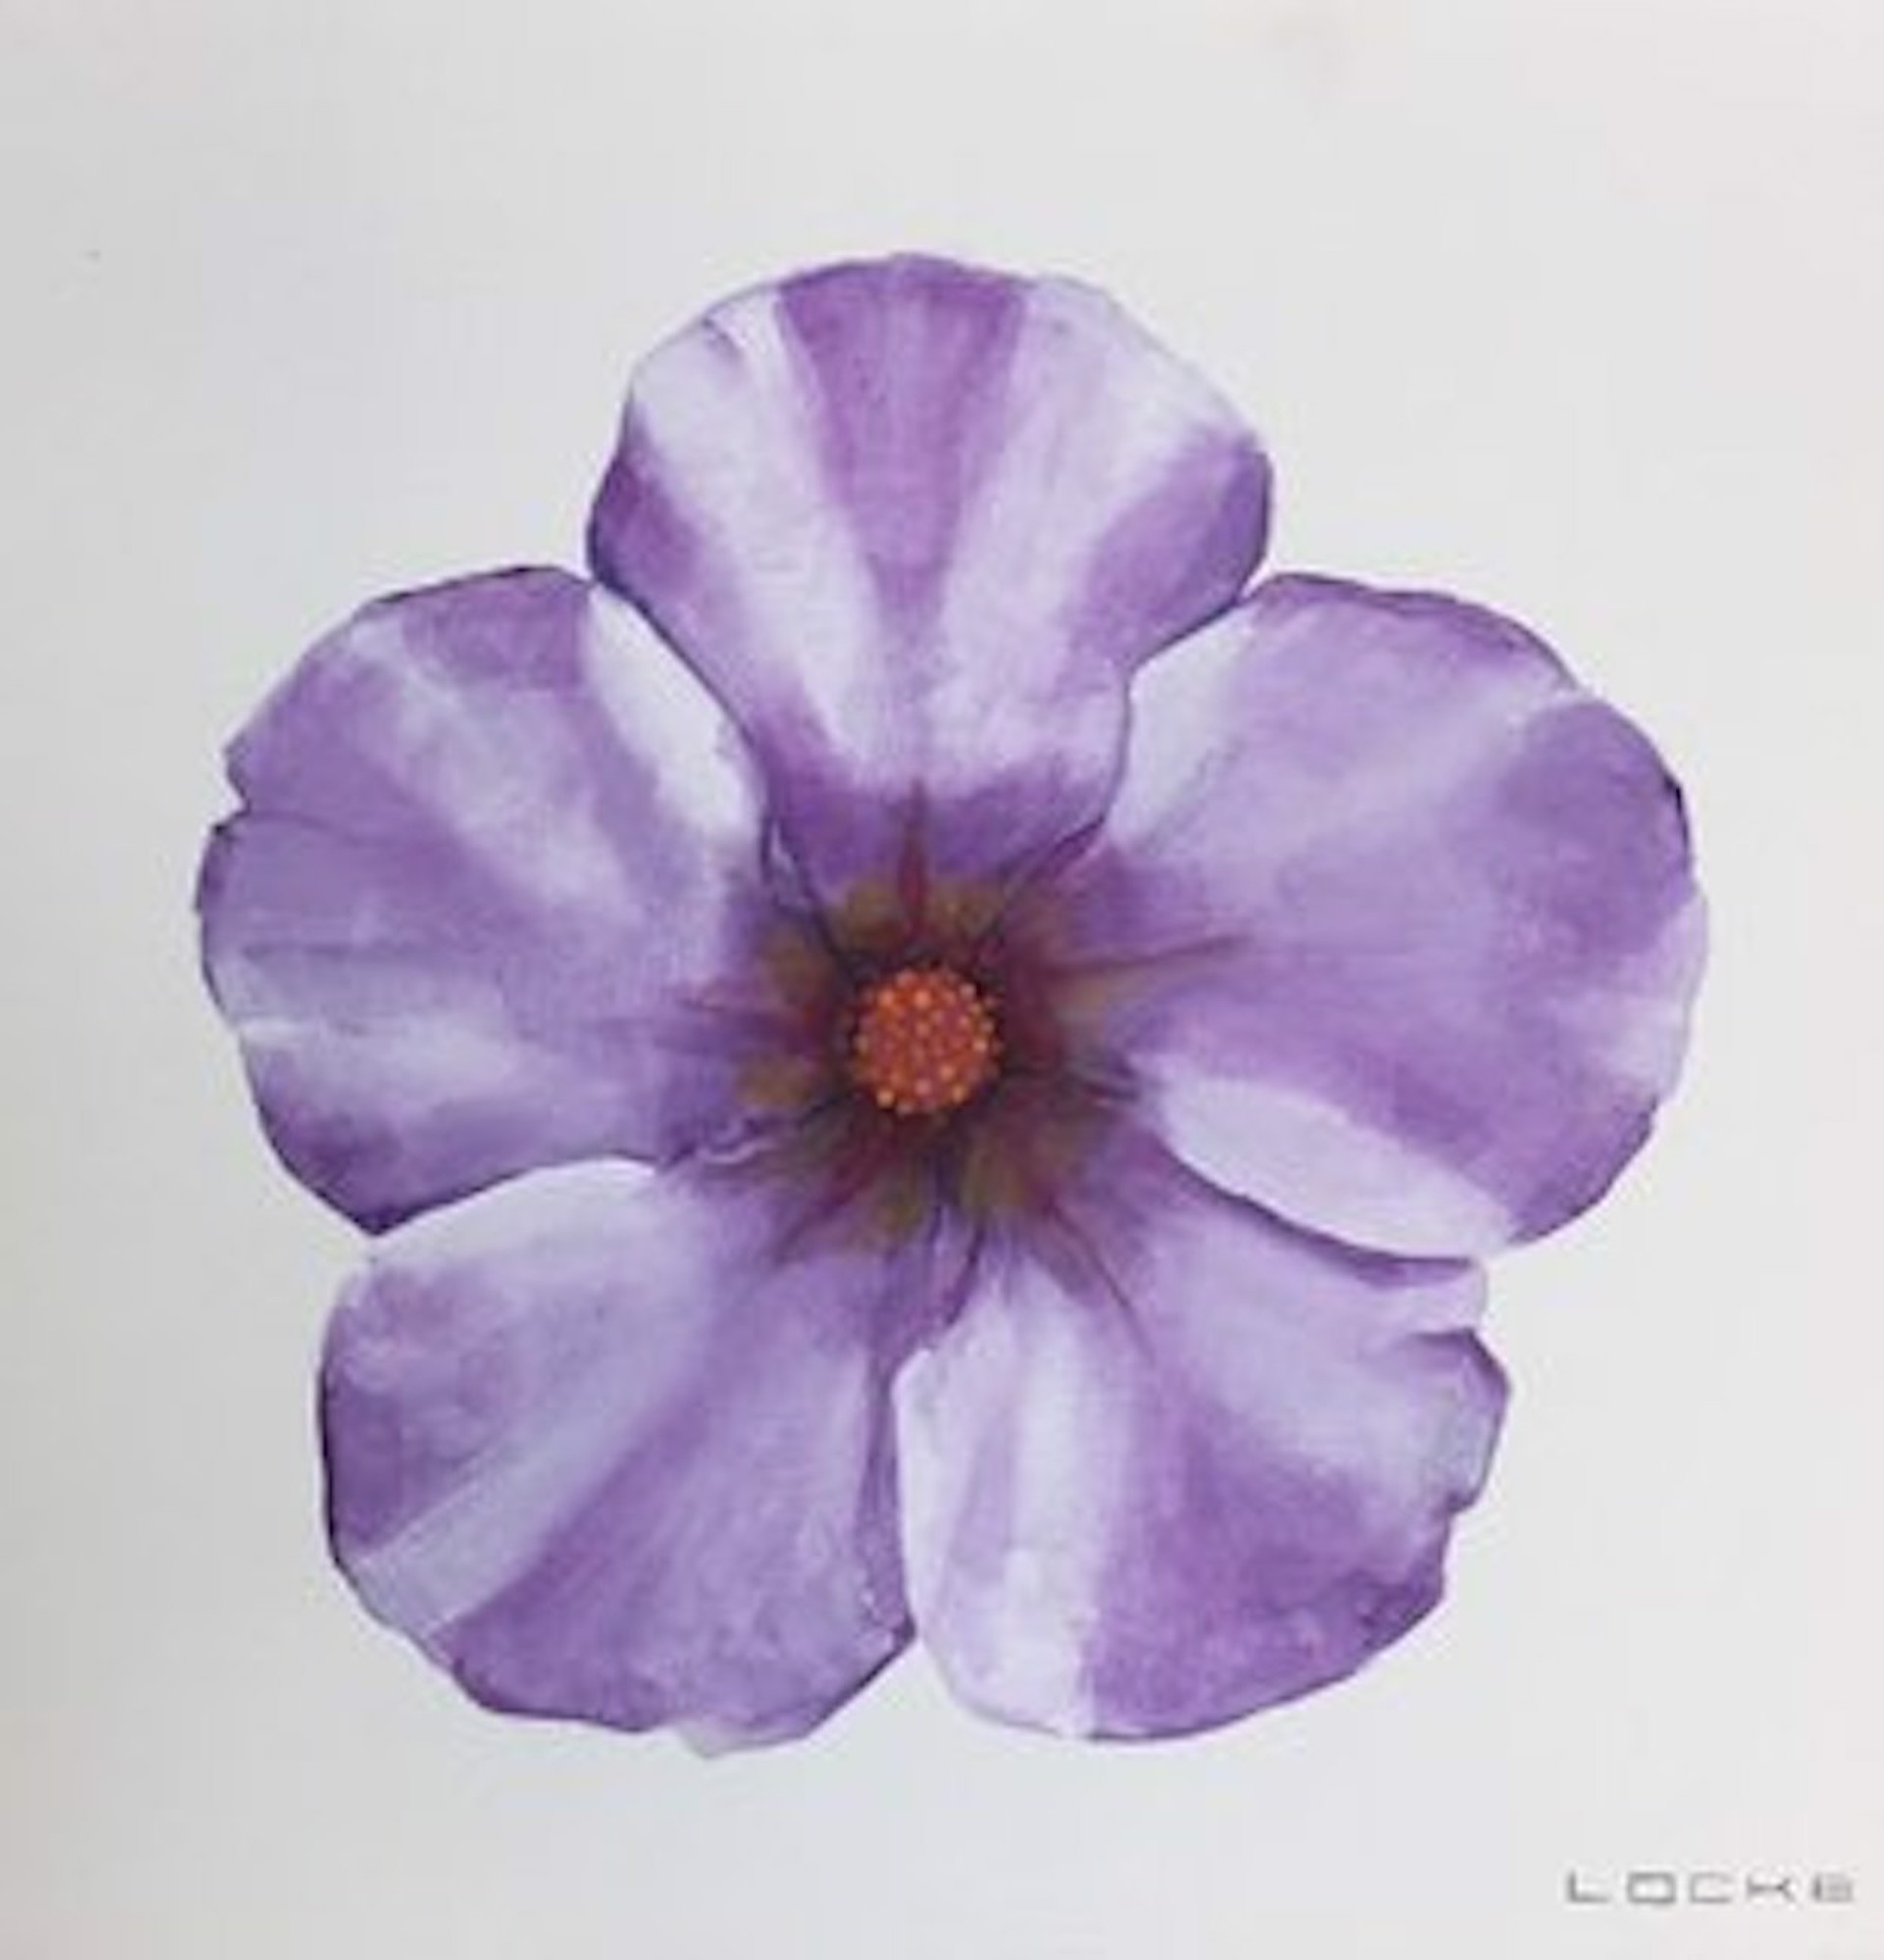 Flower Series #18 by Larry Martin Locke